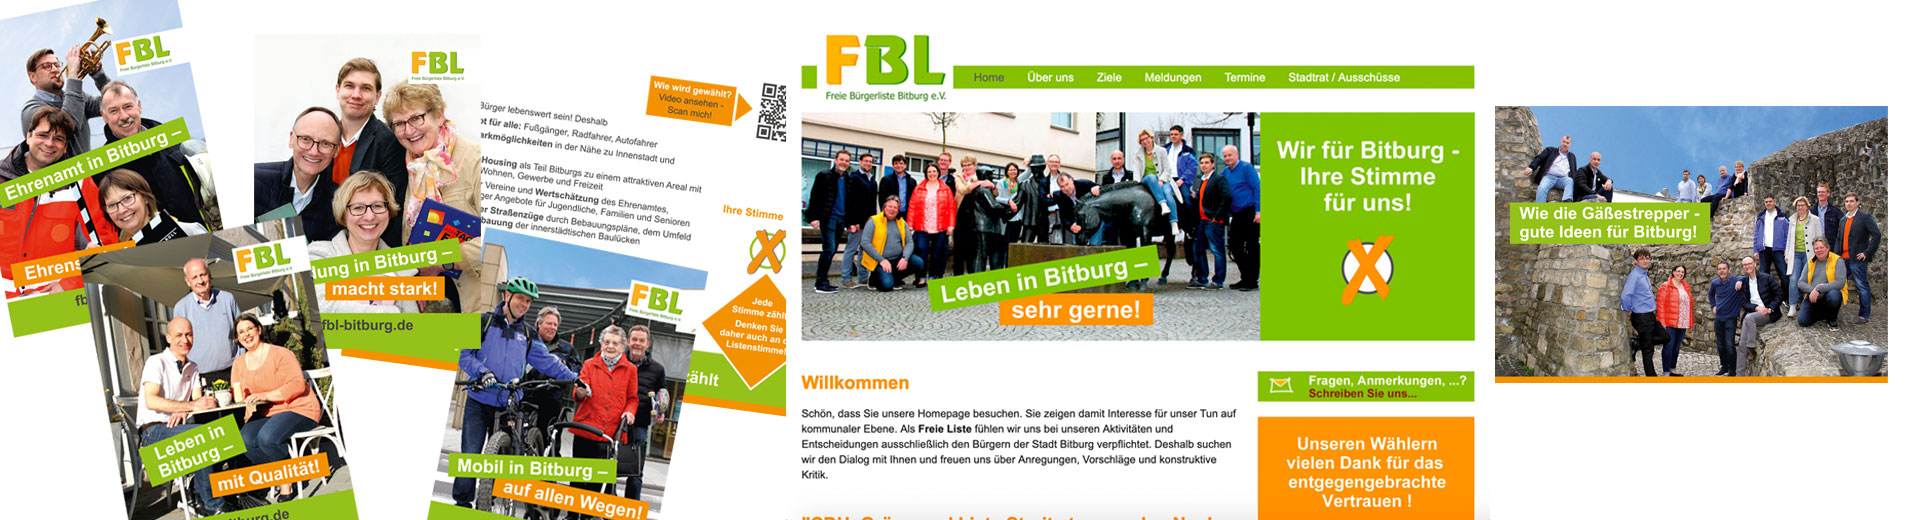 Ausschnitte aus den Projektarbeiten FBL Bitburg